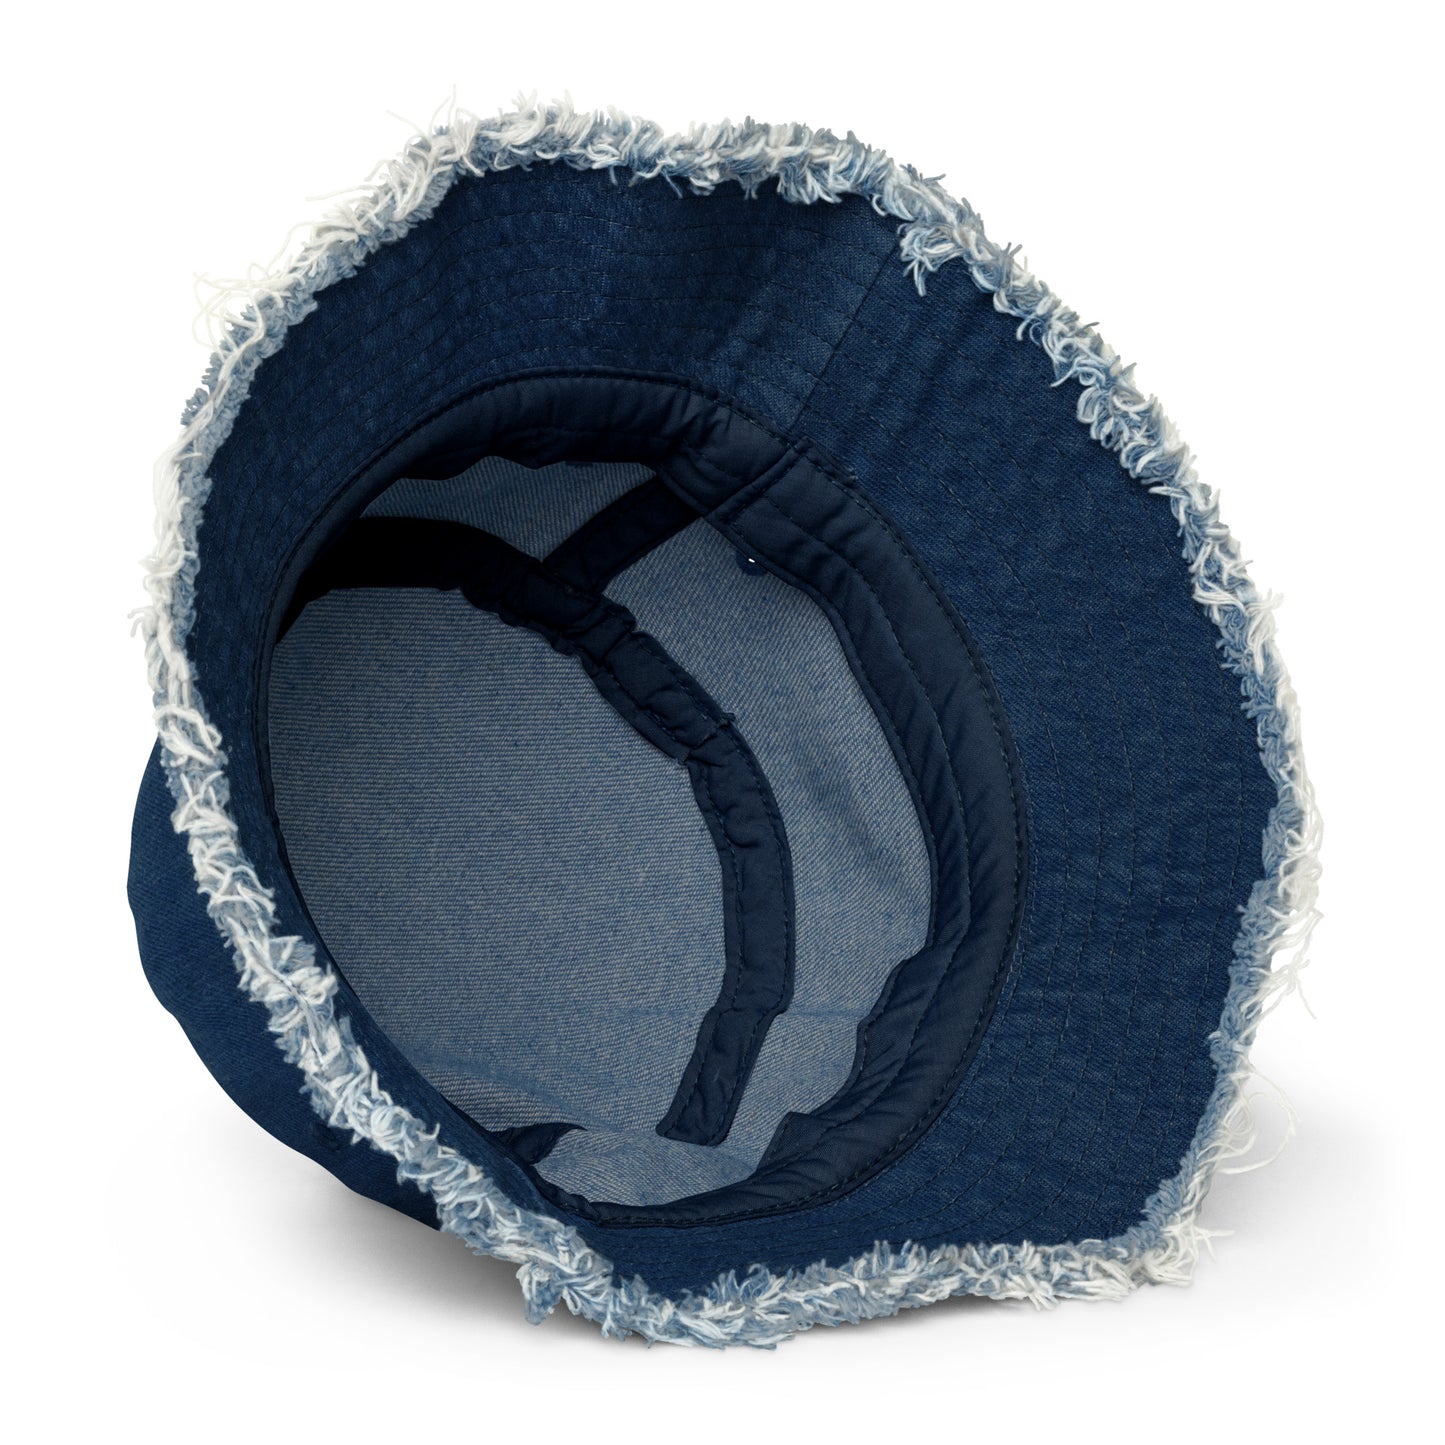 DISSRESSED DENIM Bucket Hat